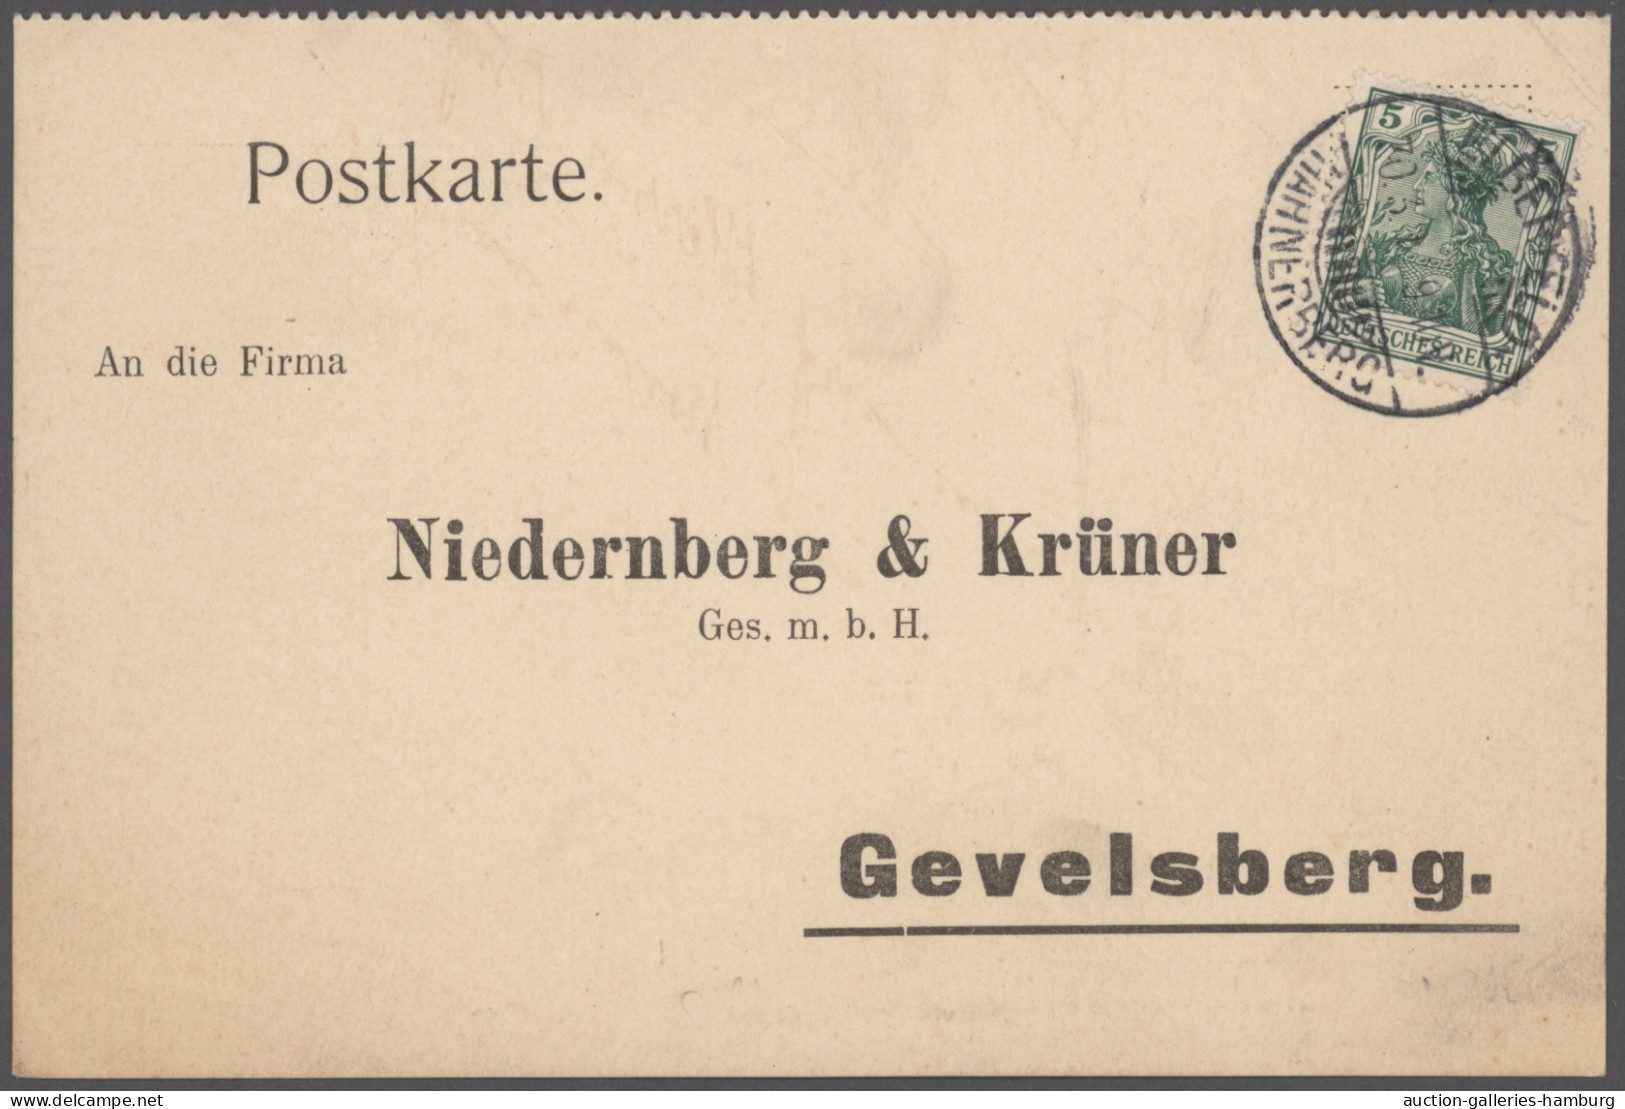 Heimat: Nordrhein-Westfalen: 1884/2006, WUPPERTAL: vielseitige Sammlung von ca.